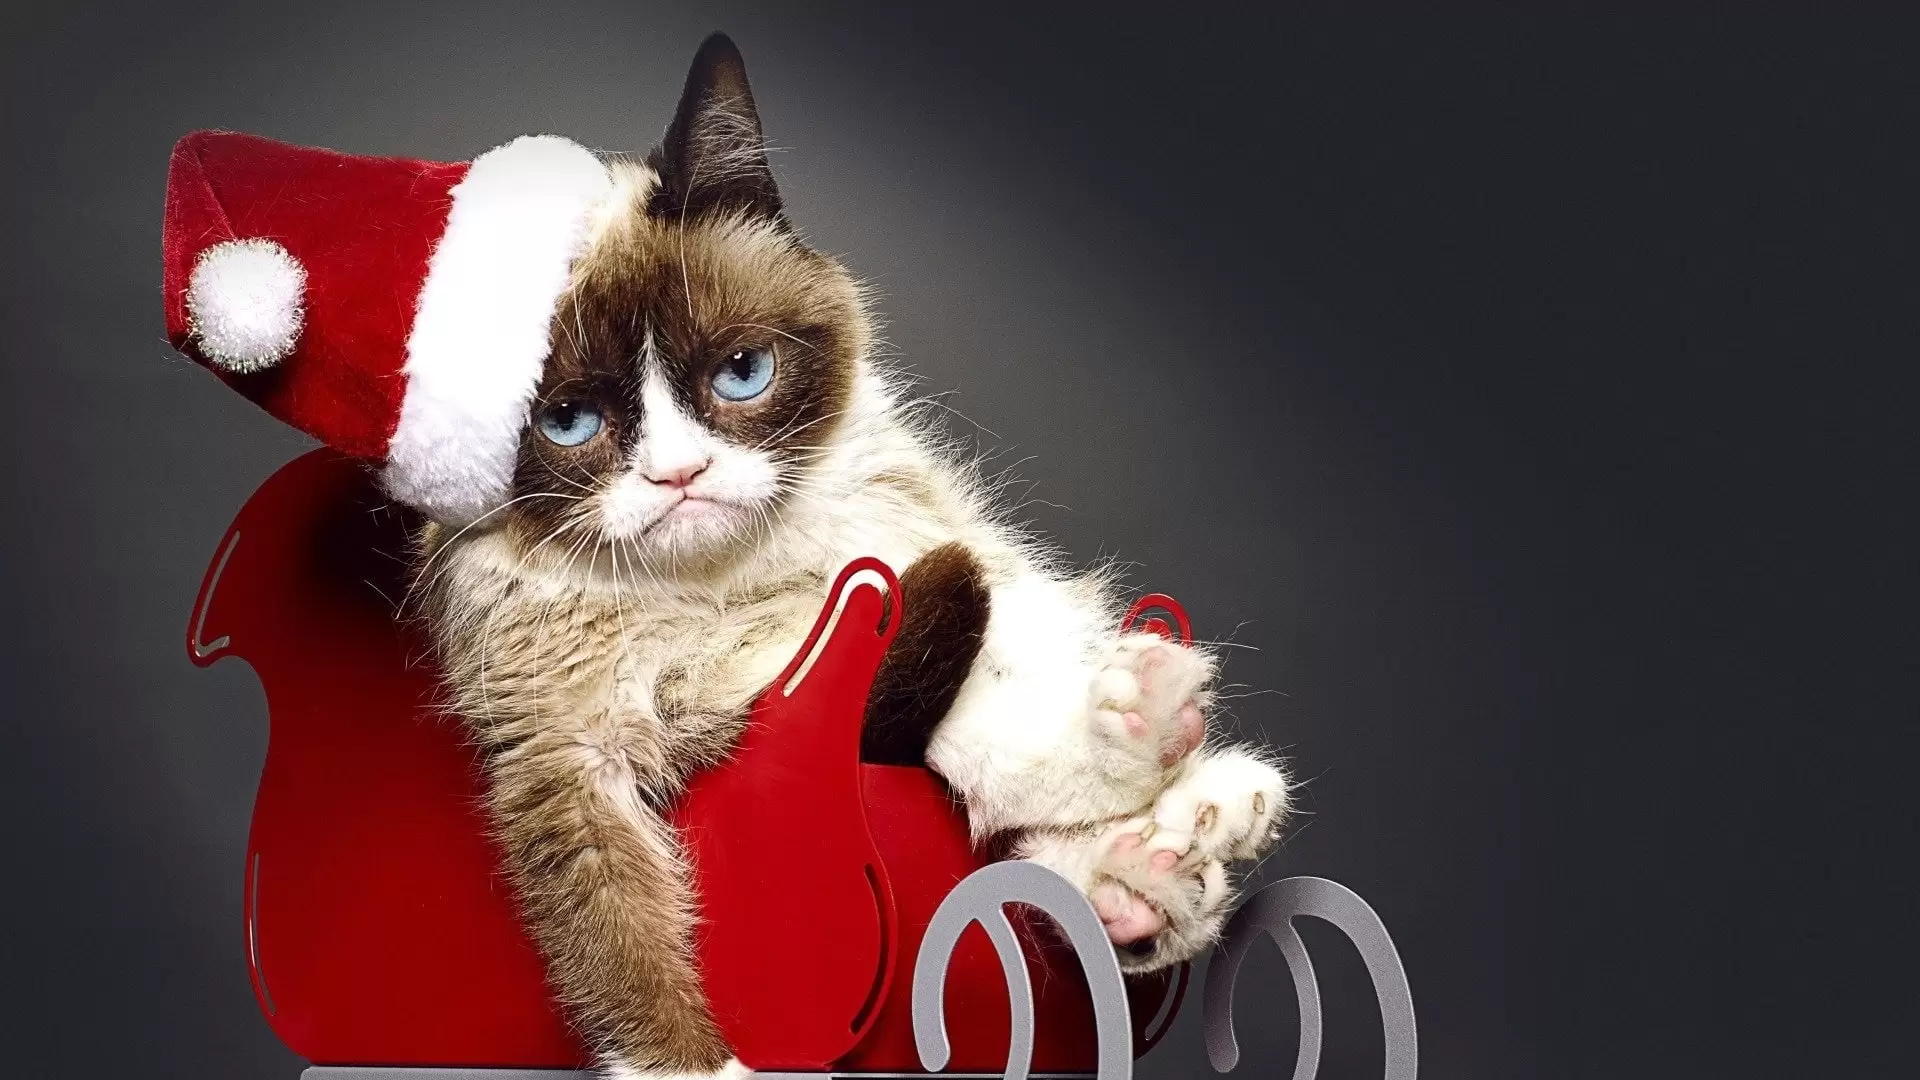 دانلود فیلم Grumpy Cat’s Worst Christmas Ever 2014